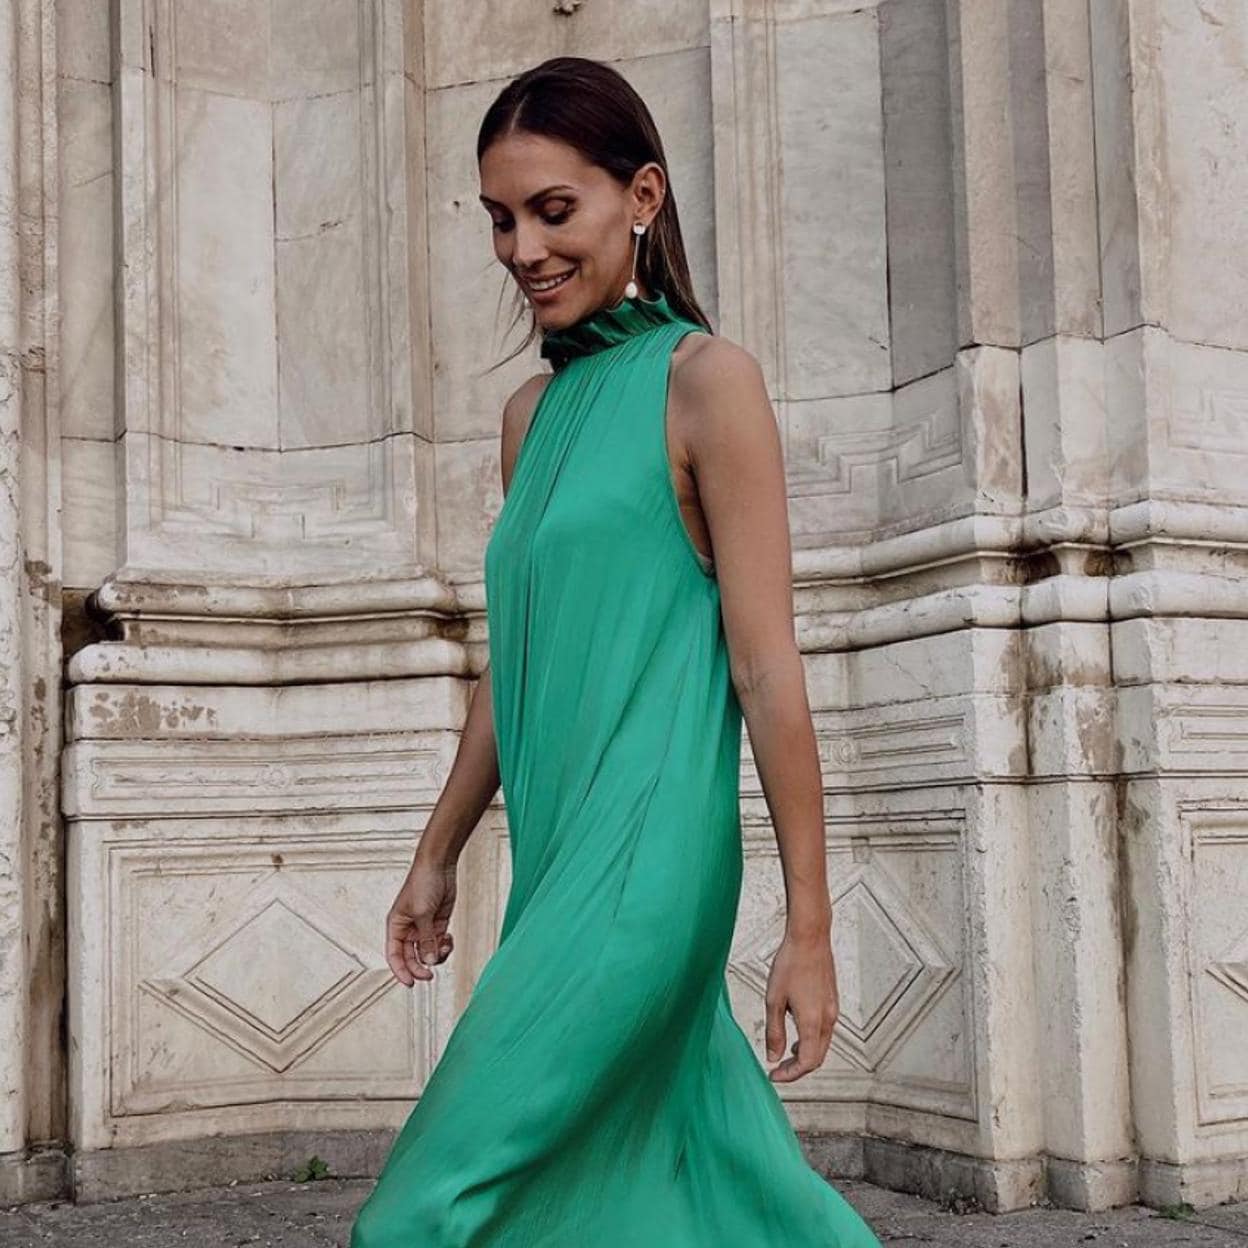 Este es el espectacular vestido de Sfera con el que podrás ser invitada perfecta por muy poco | Mujer Hoy